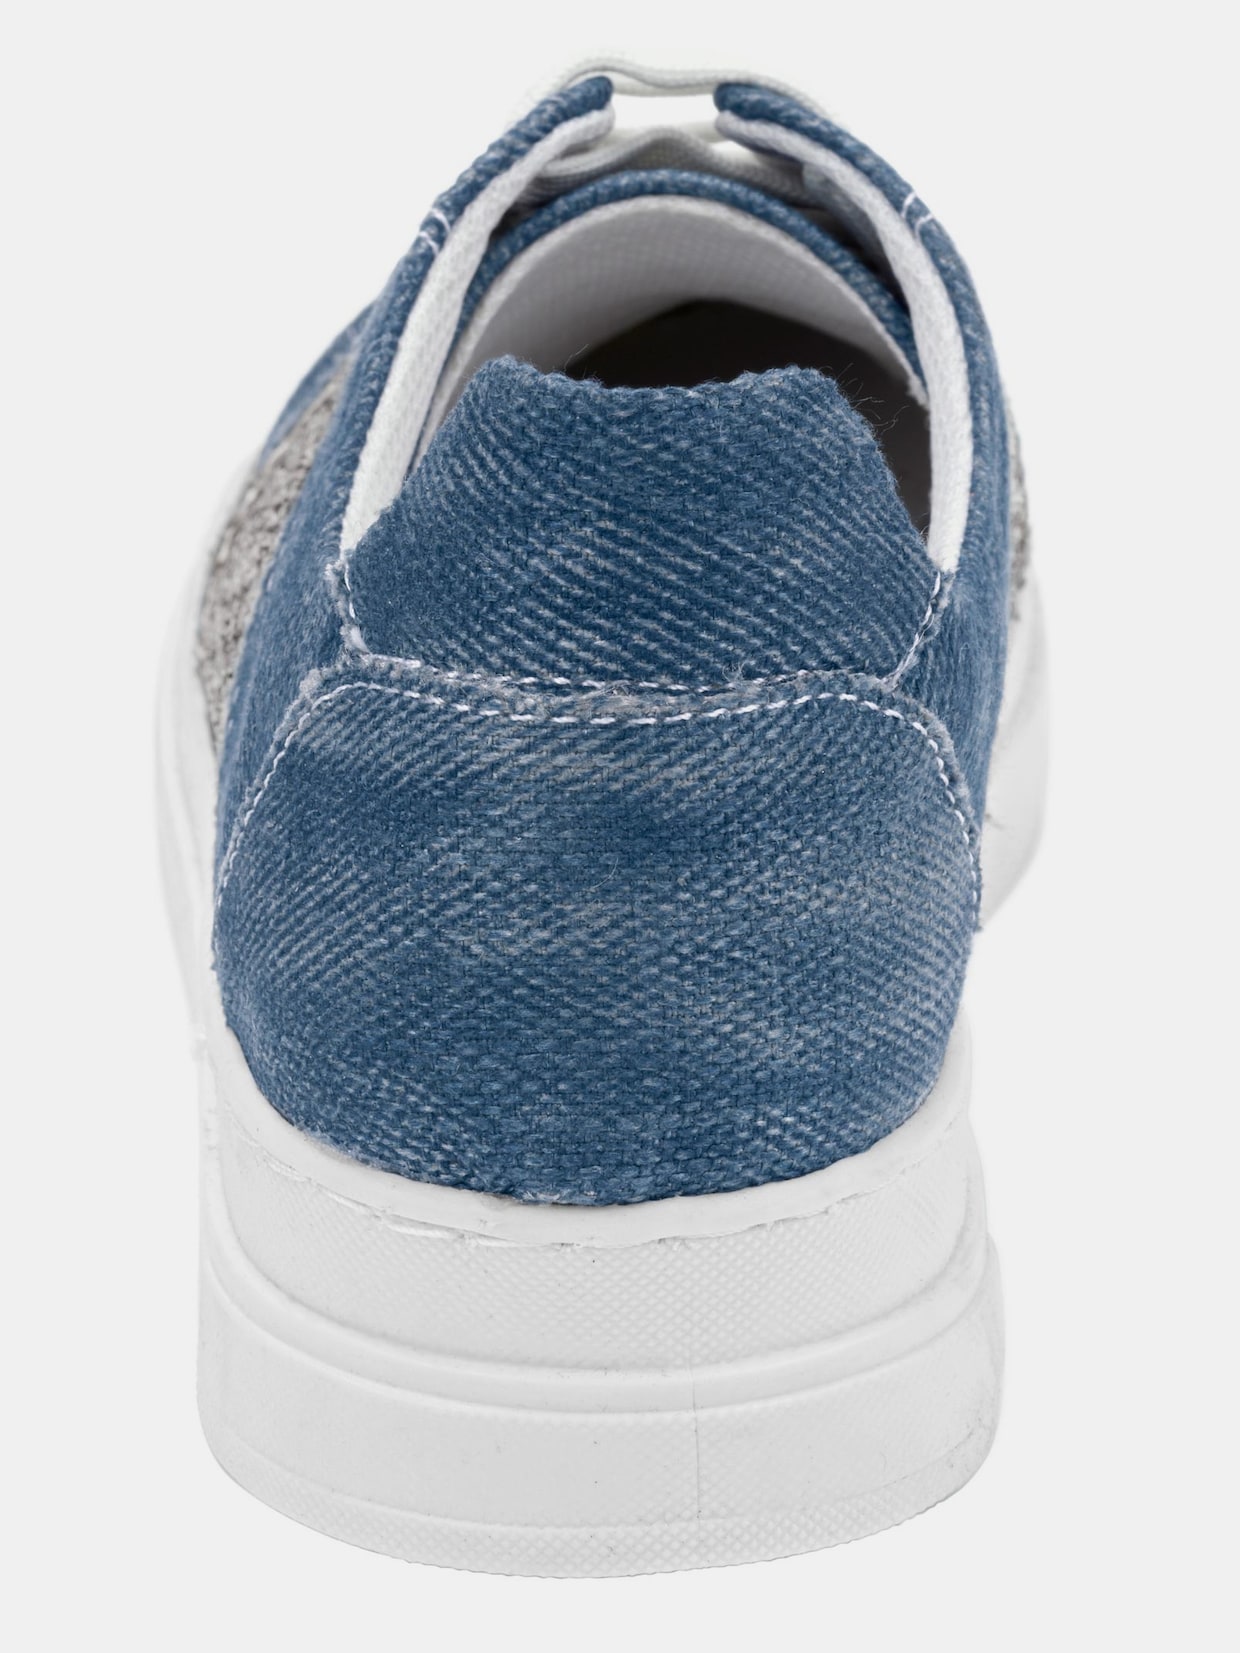 Andrea Conti Sneaker - jeansblauw/zilverkleurig